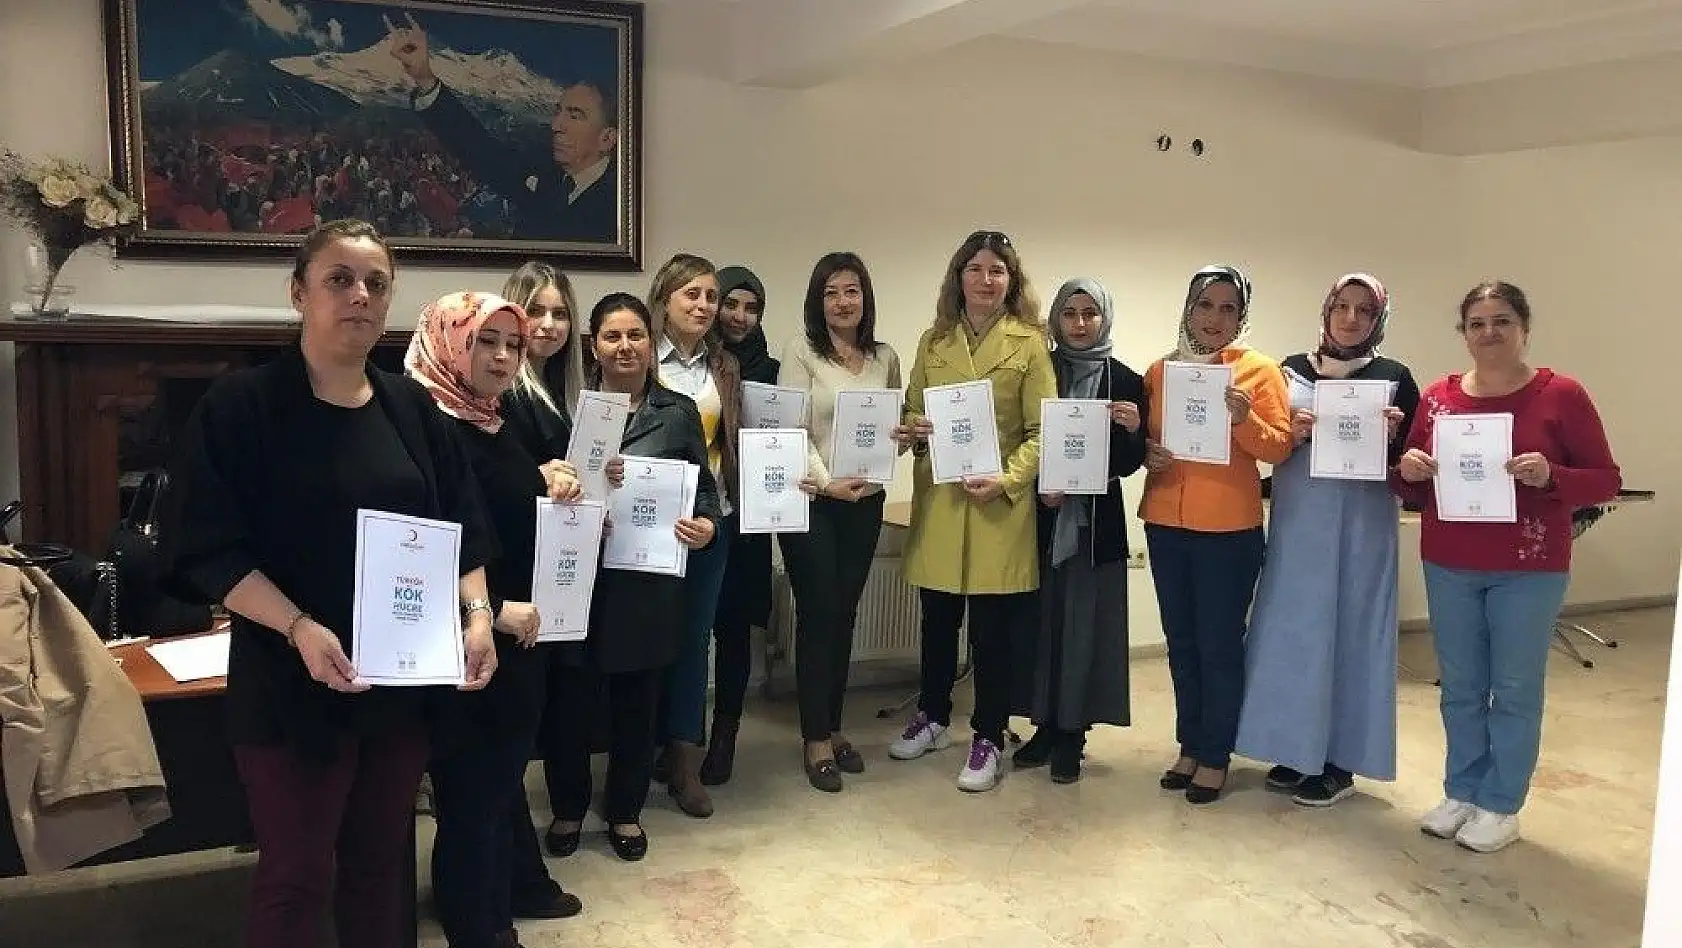 MHP'li kadınlar kök hücre bağışçısı oldu
